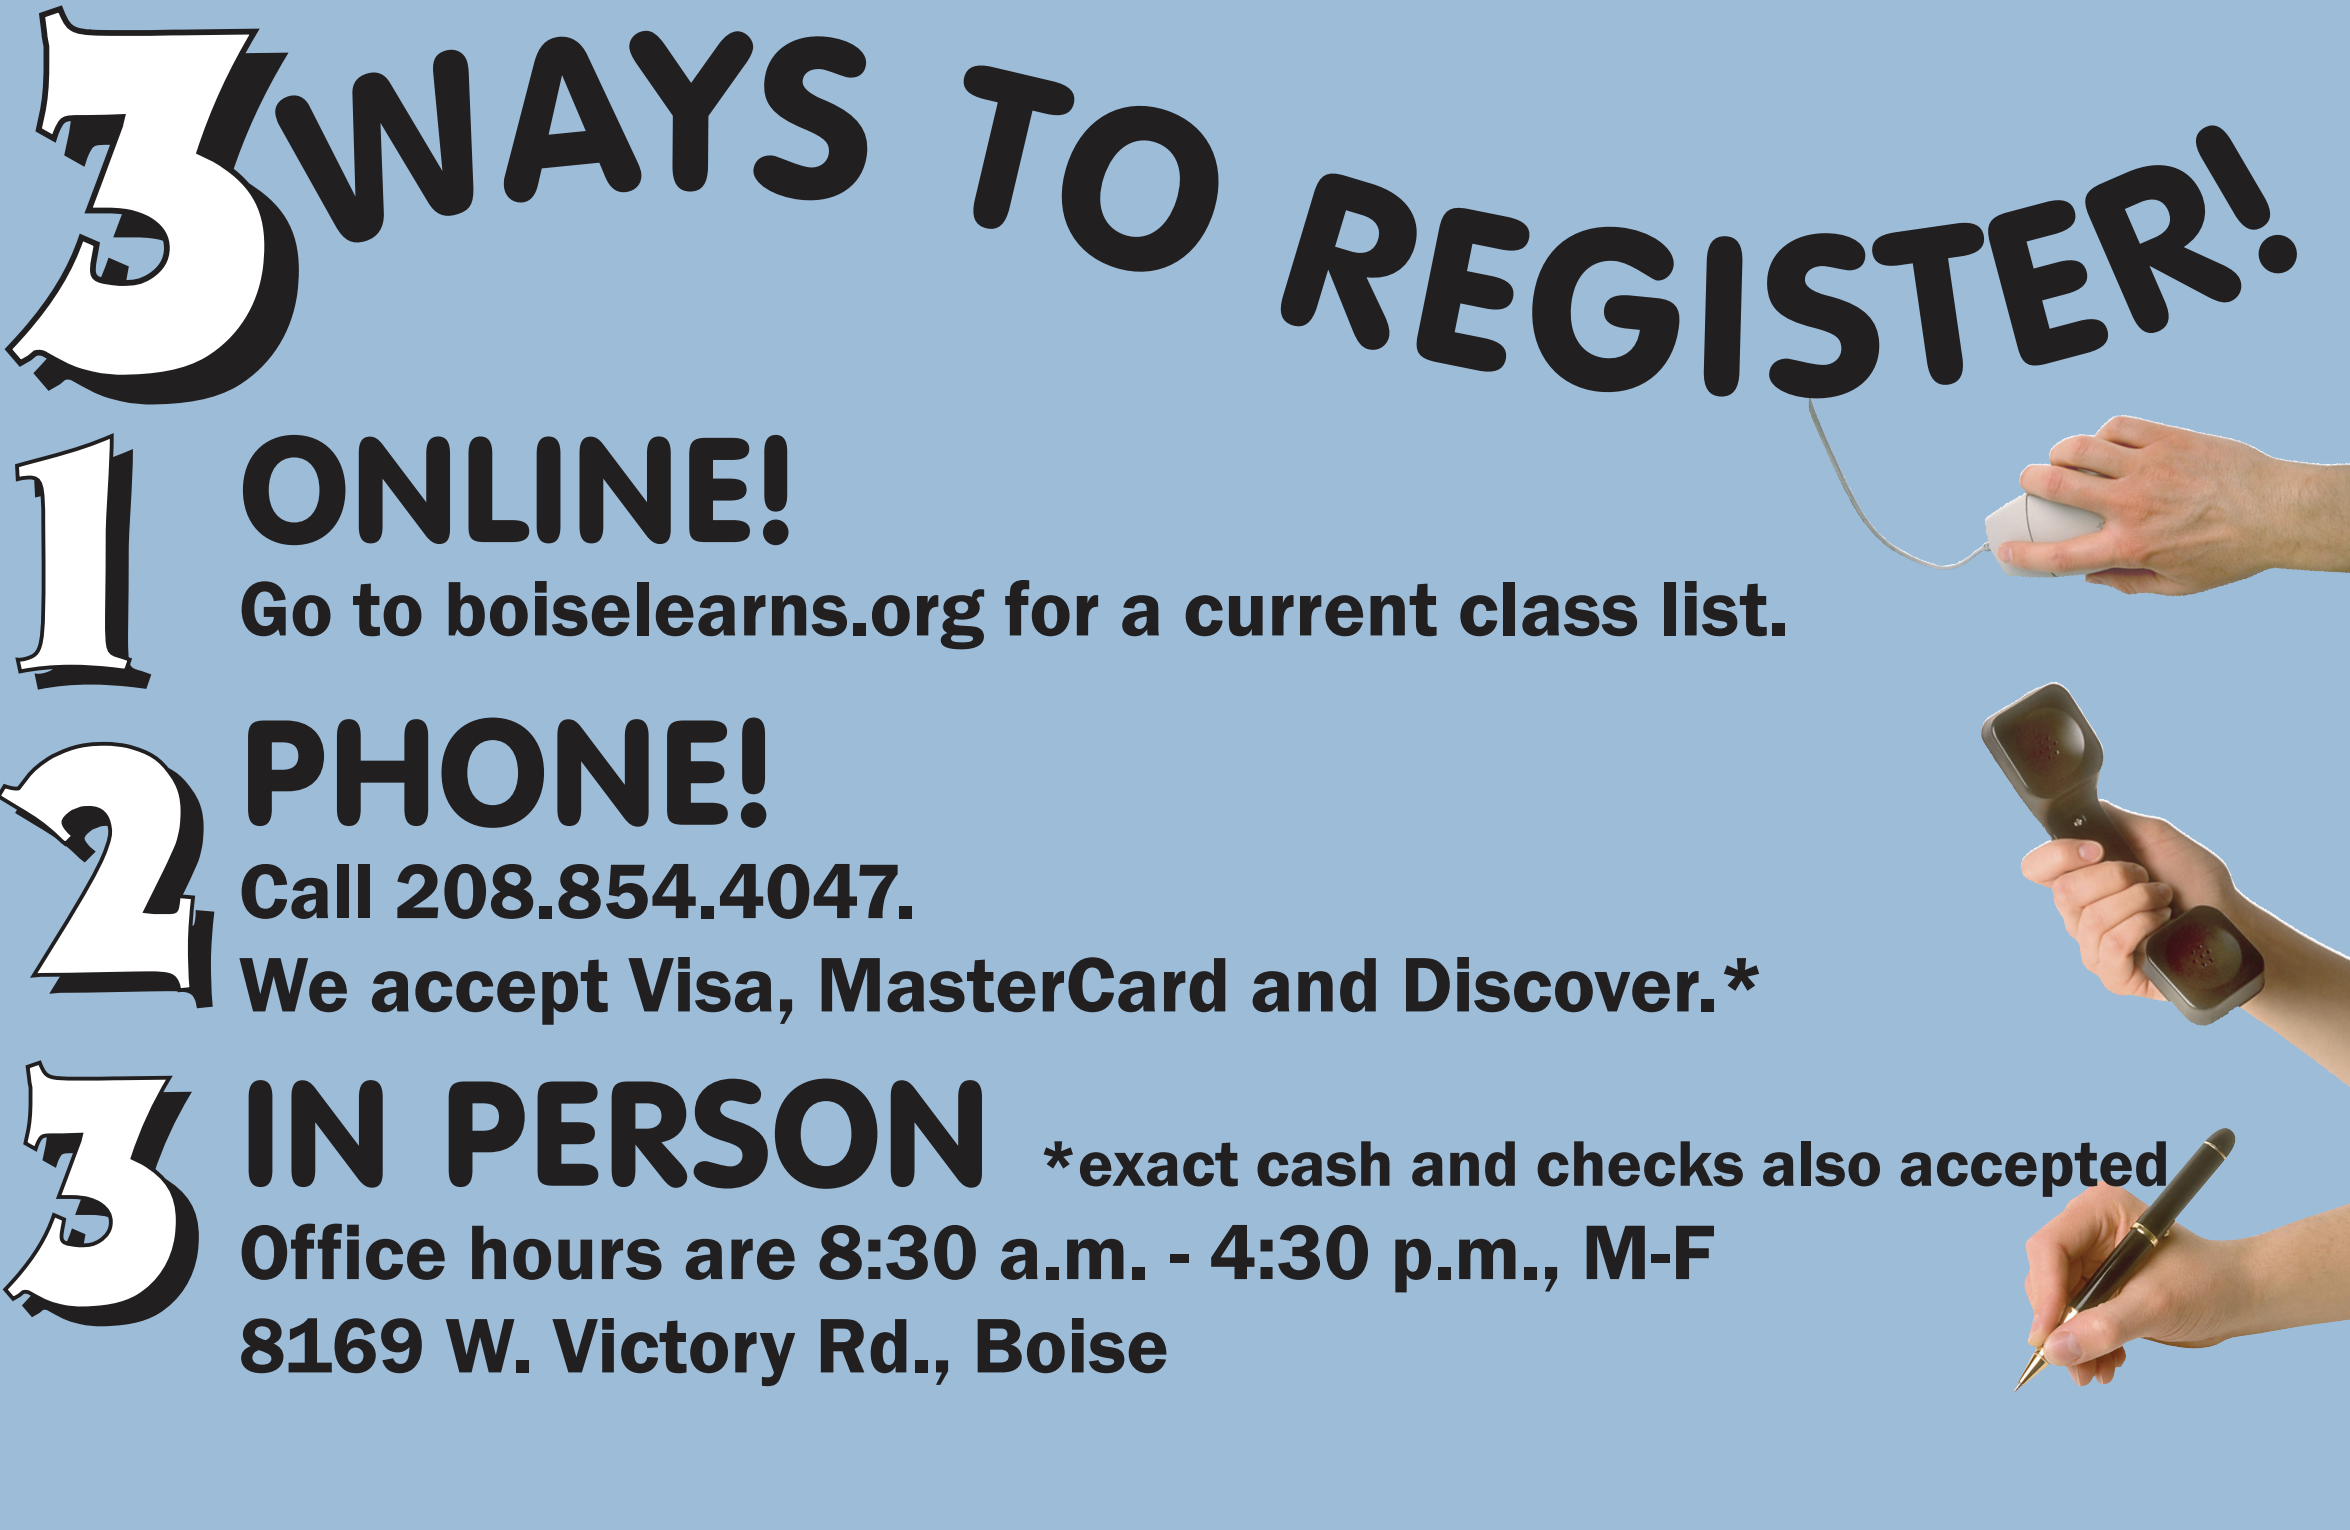 Register Online!